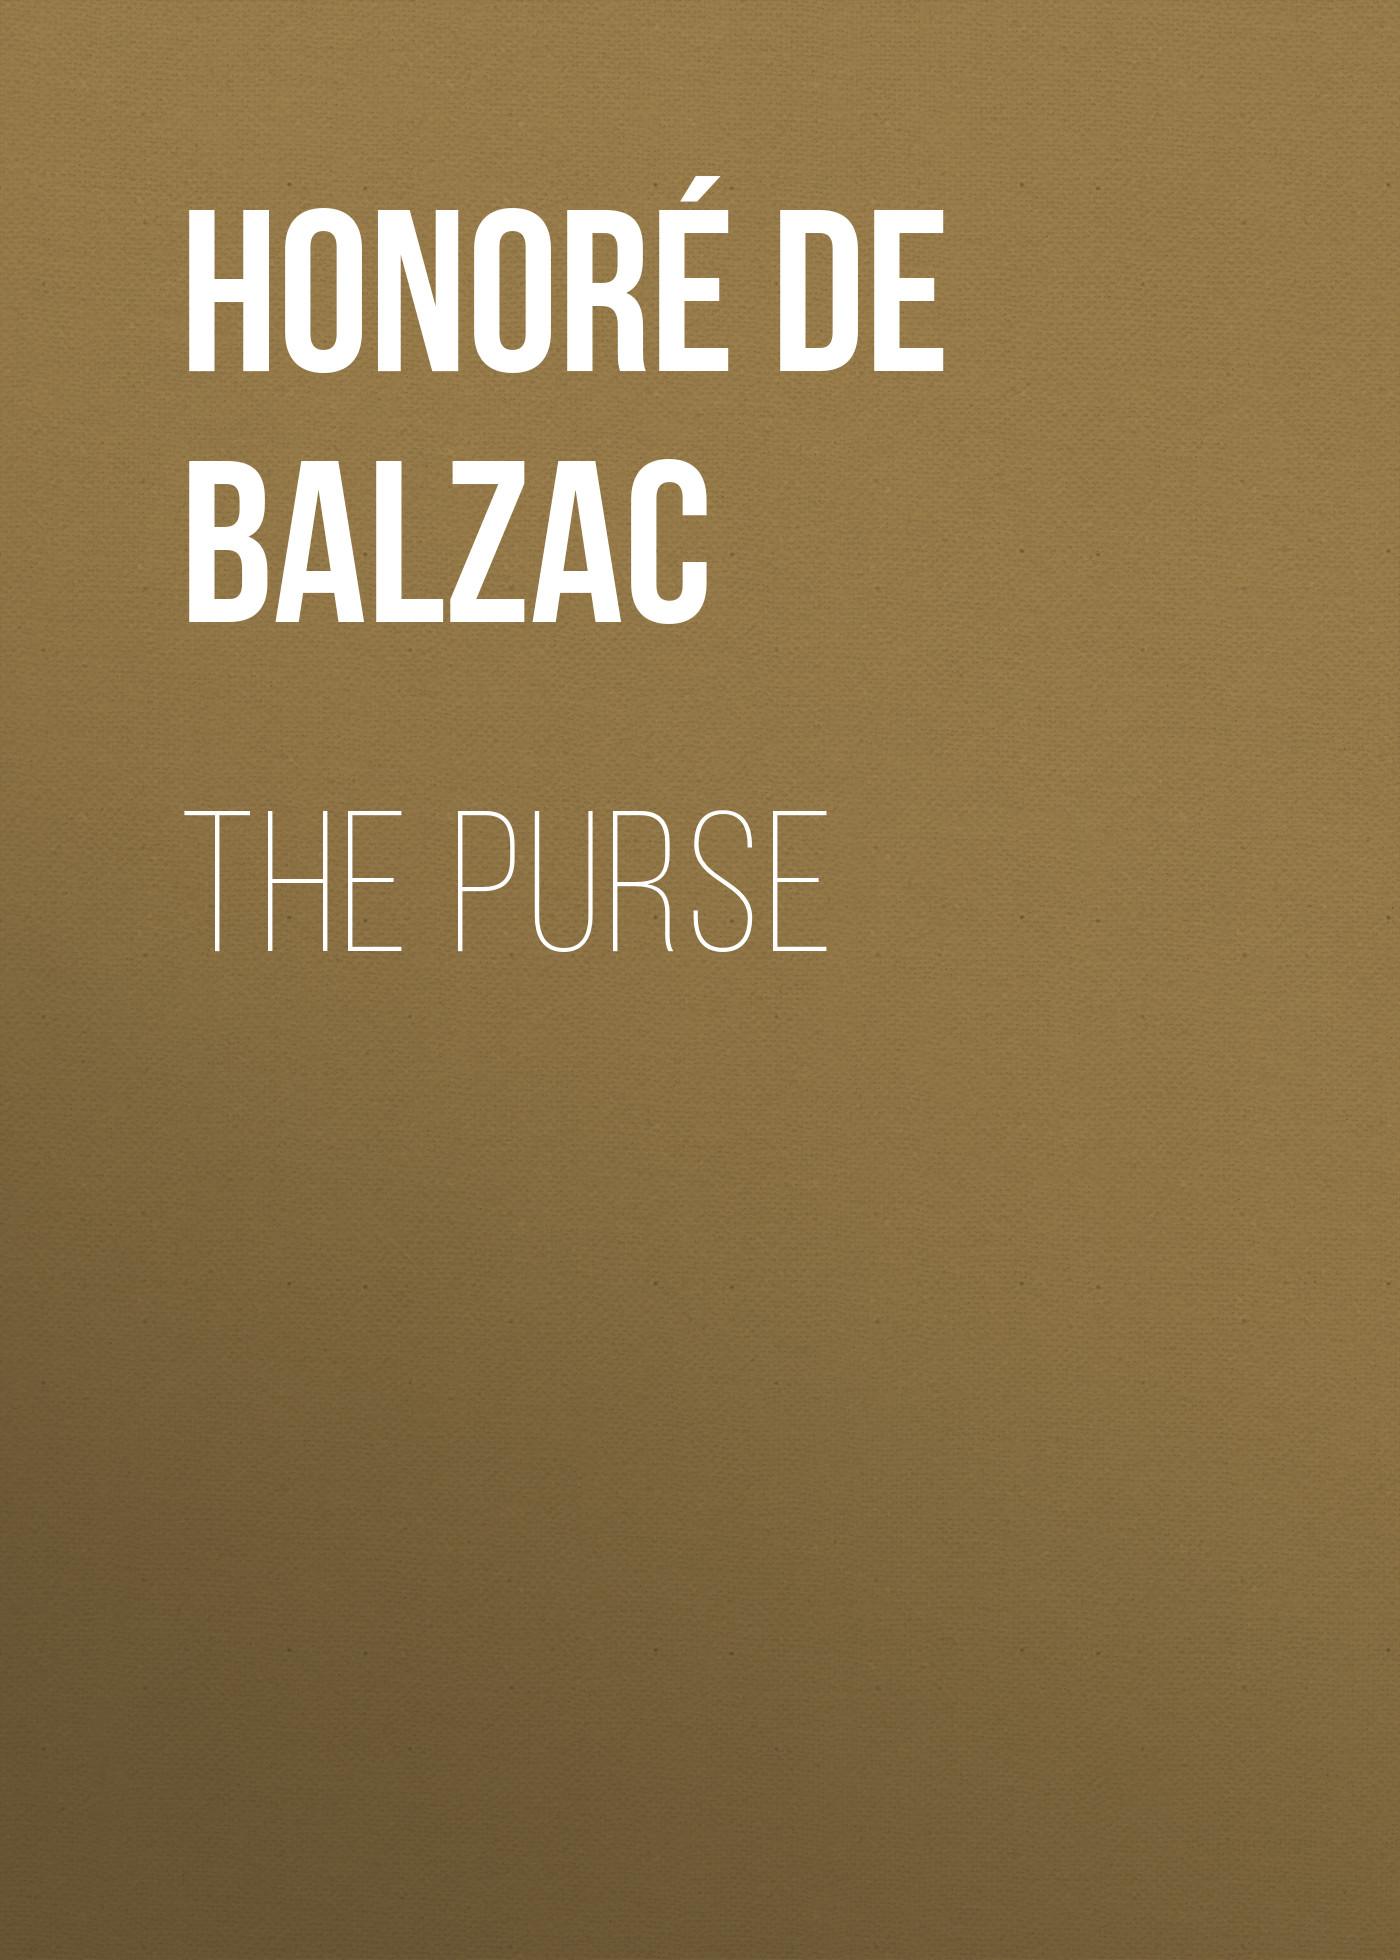 Книга The Purse из серии , созданная Honoré Balzac, может относится к жанру Литература 19 века, Зарубежная старинная литература, Зарубежная классика. Стоимость электронной книги The Purse с идентификатором 25020683 составляет 0 руб.